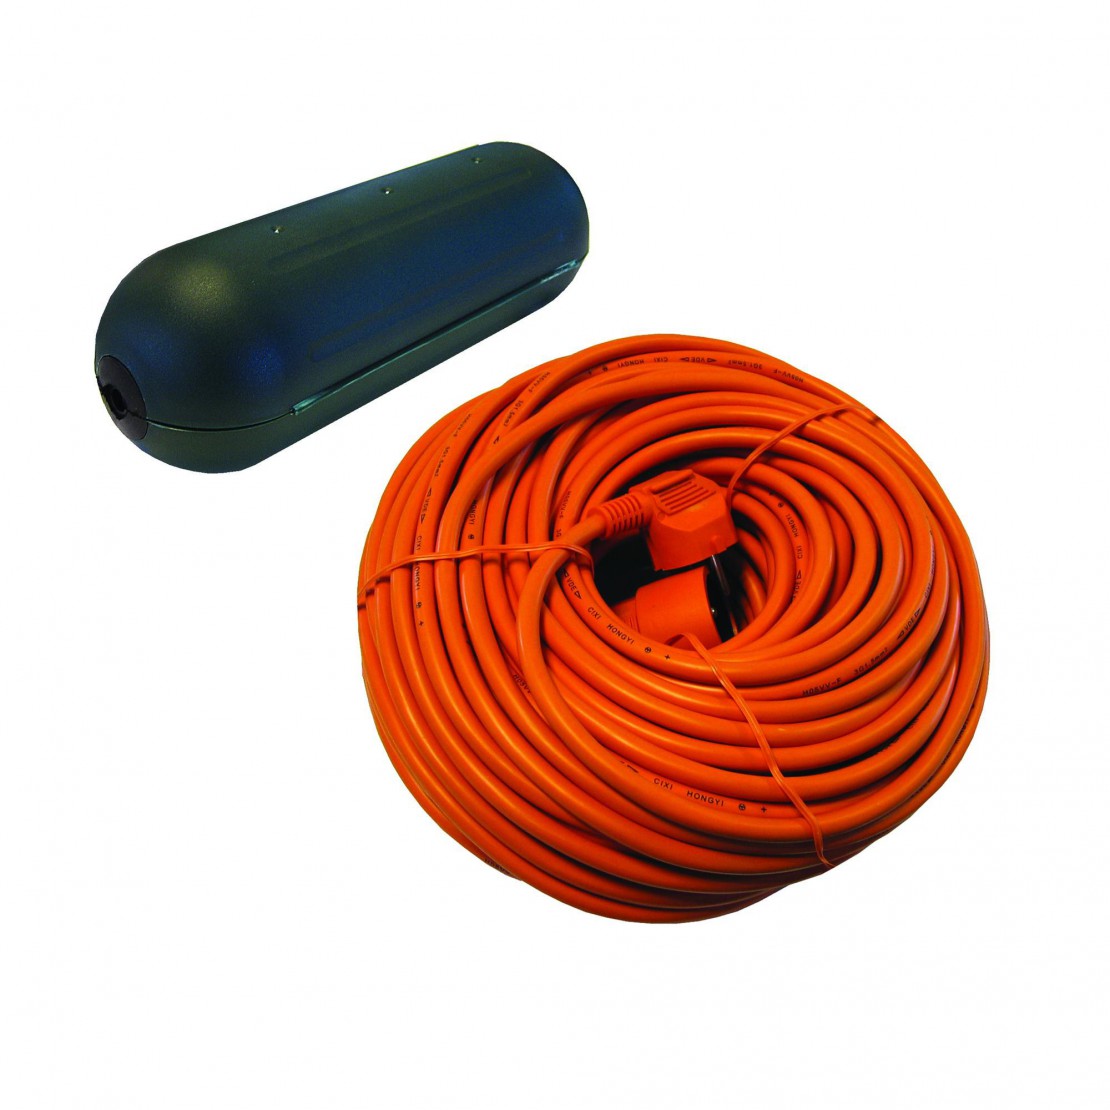 Caja de protección estanca para cable + Alargador naranja - 20 m